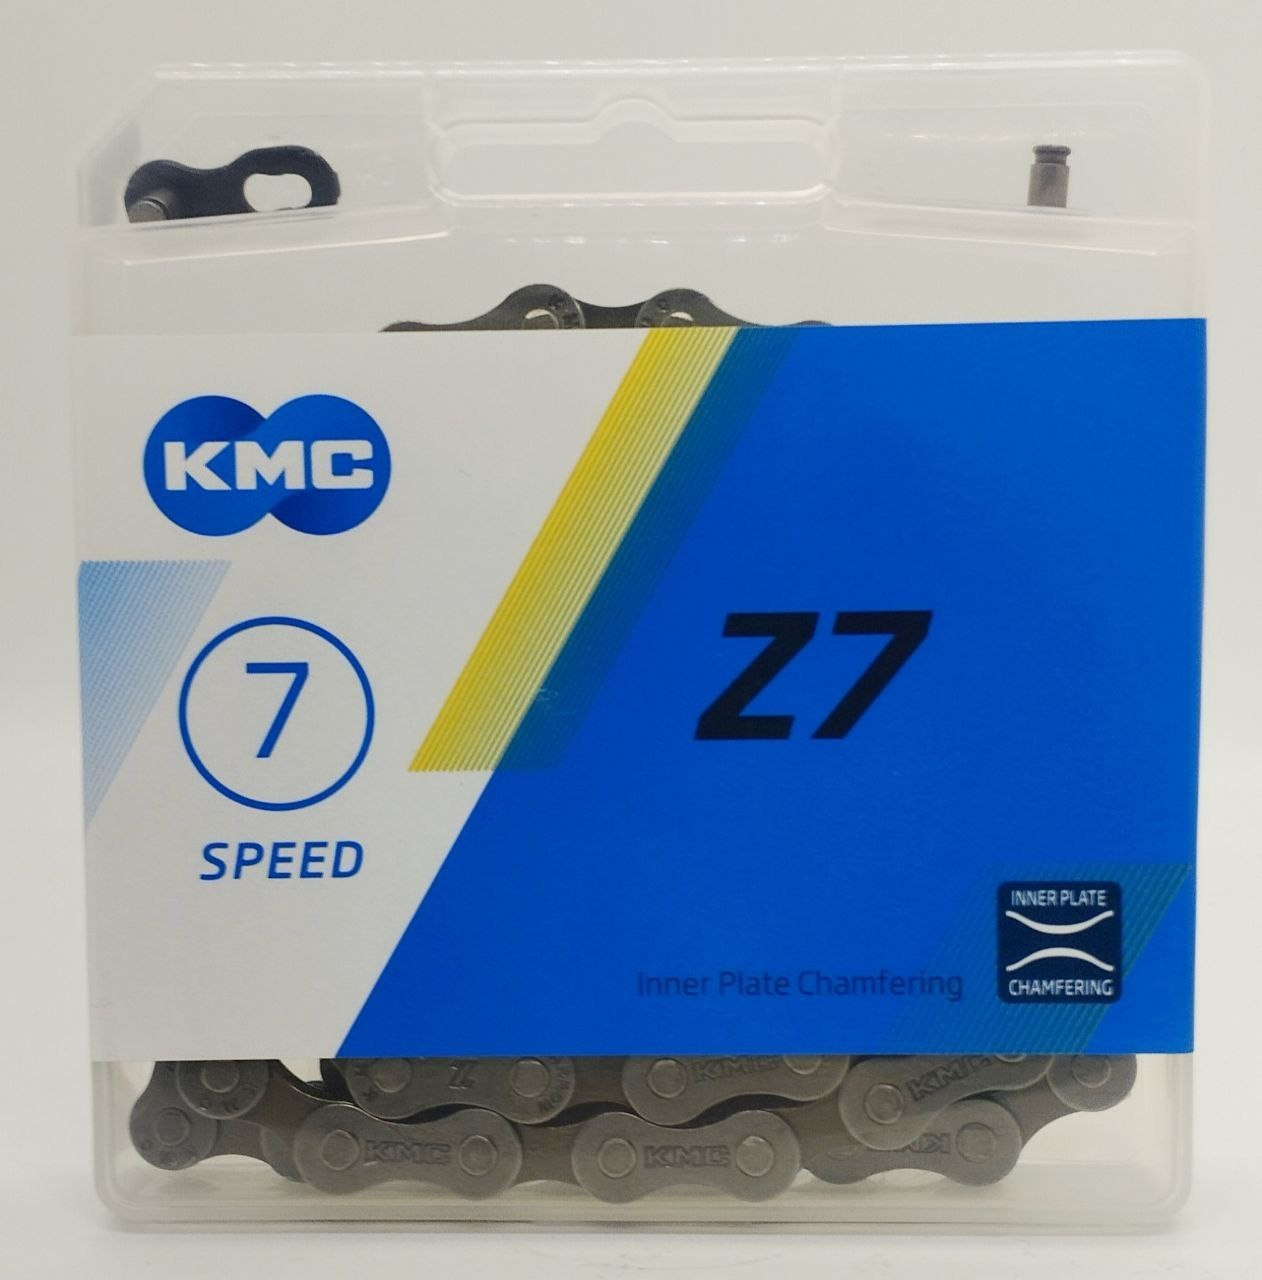 Ланцюг KMC Z7, 7 швидкостей, 114 ланок з замком